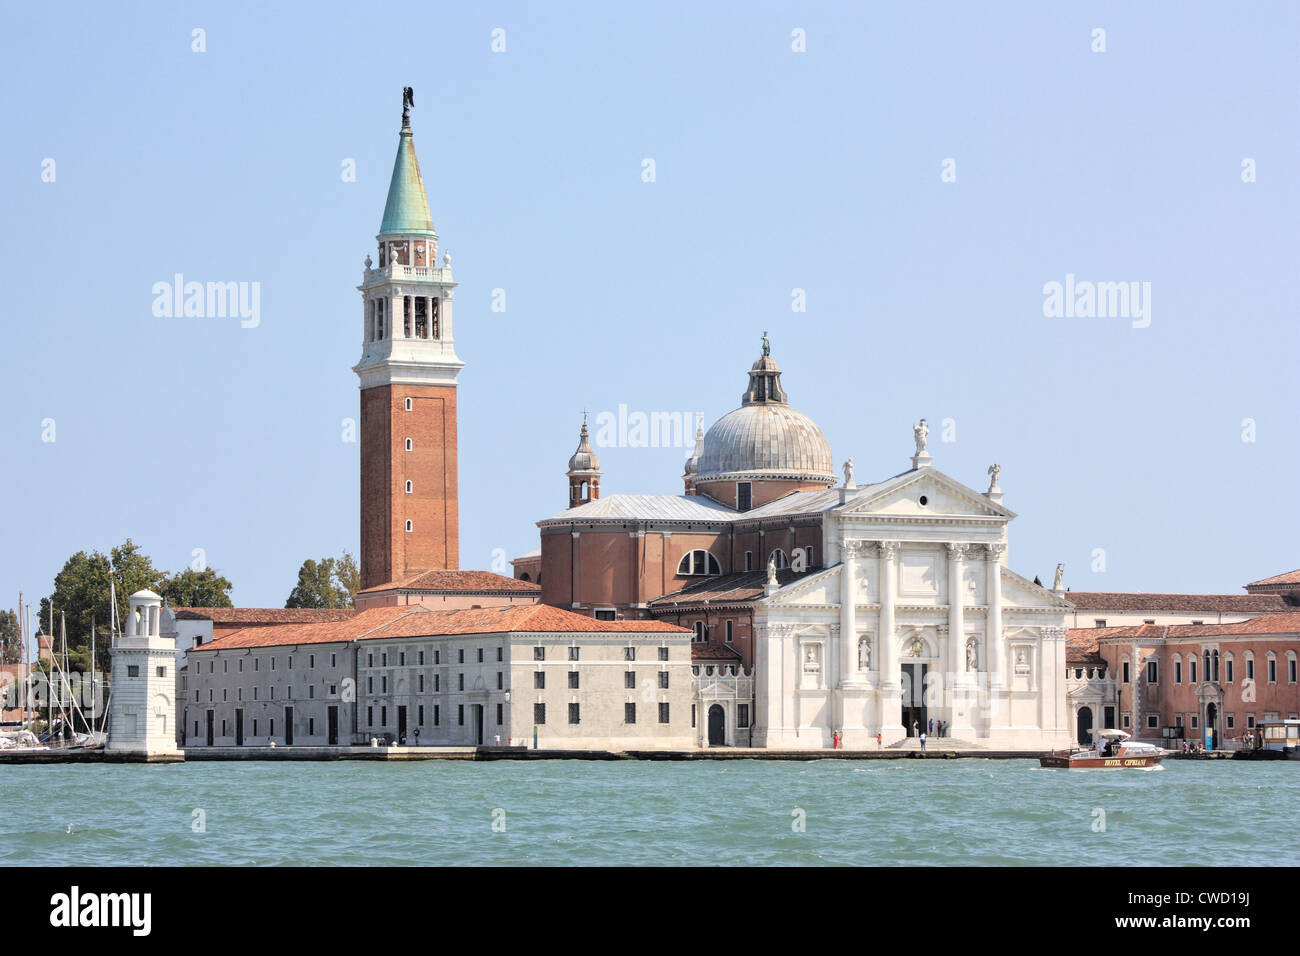 Isola di San Giorgio Maggiore, l'île de Venise, Italie Banque D'Images